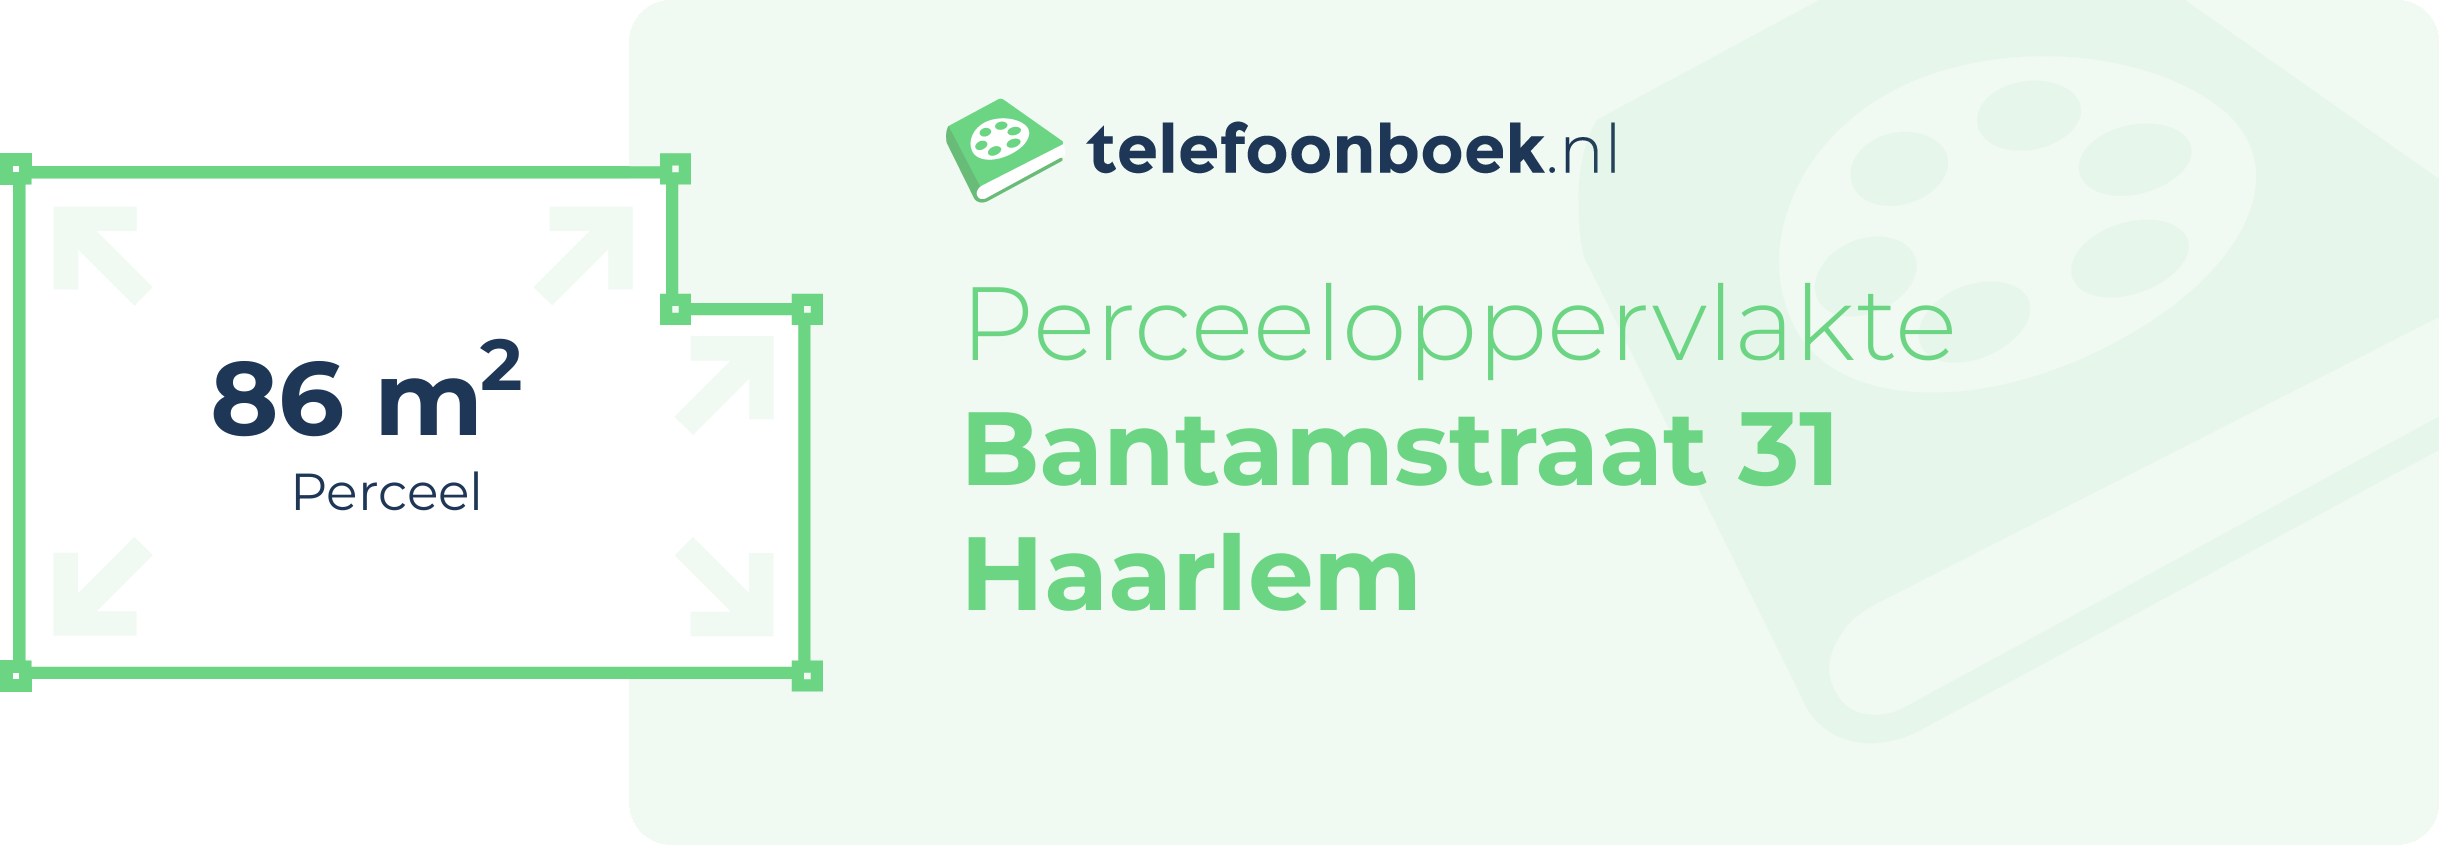 Perceeloppervlakte Bantamstraat 31 Haarlem